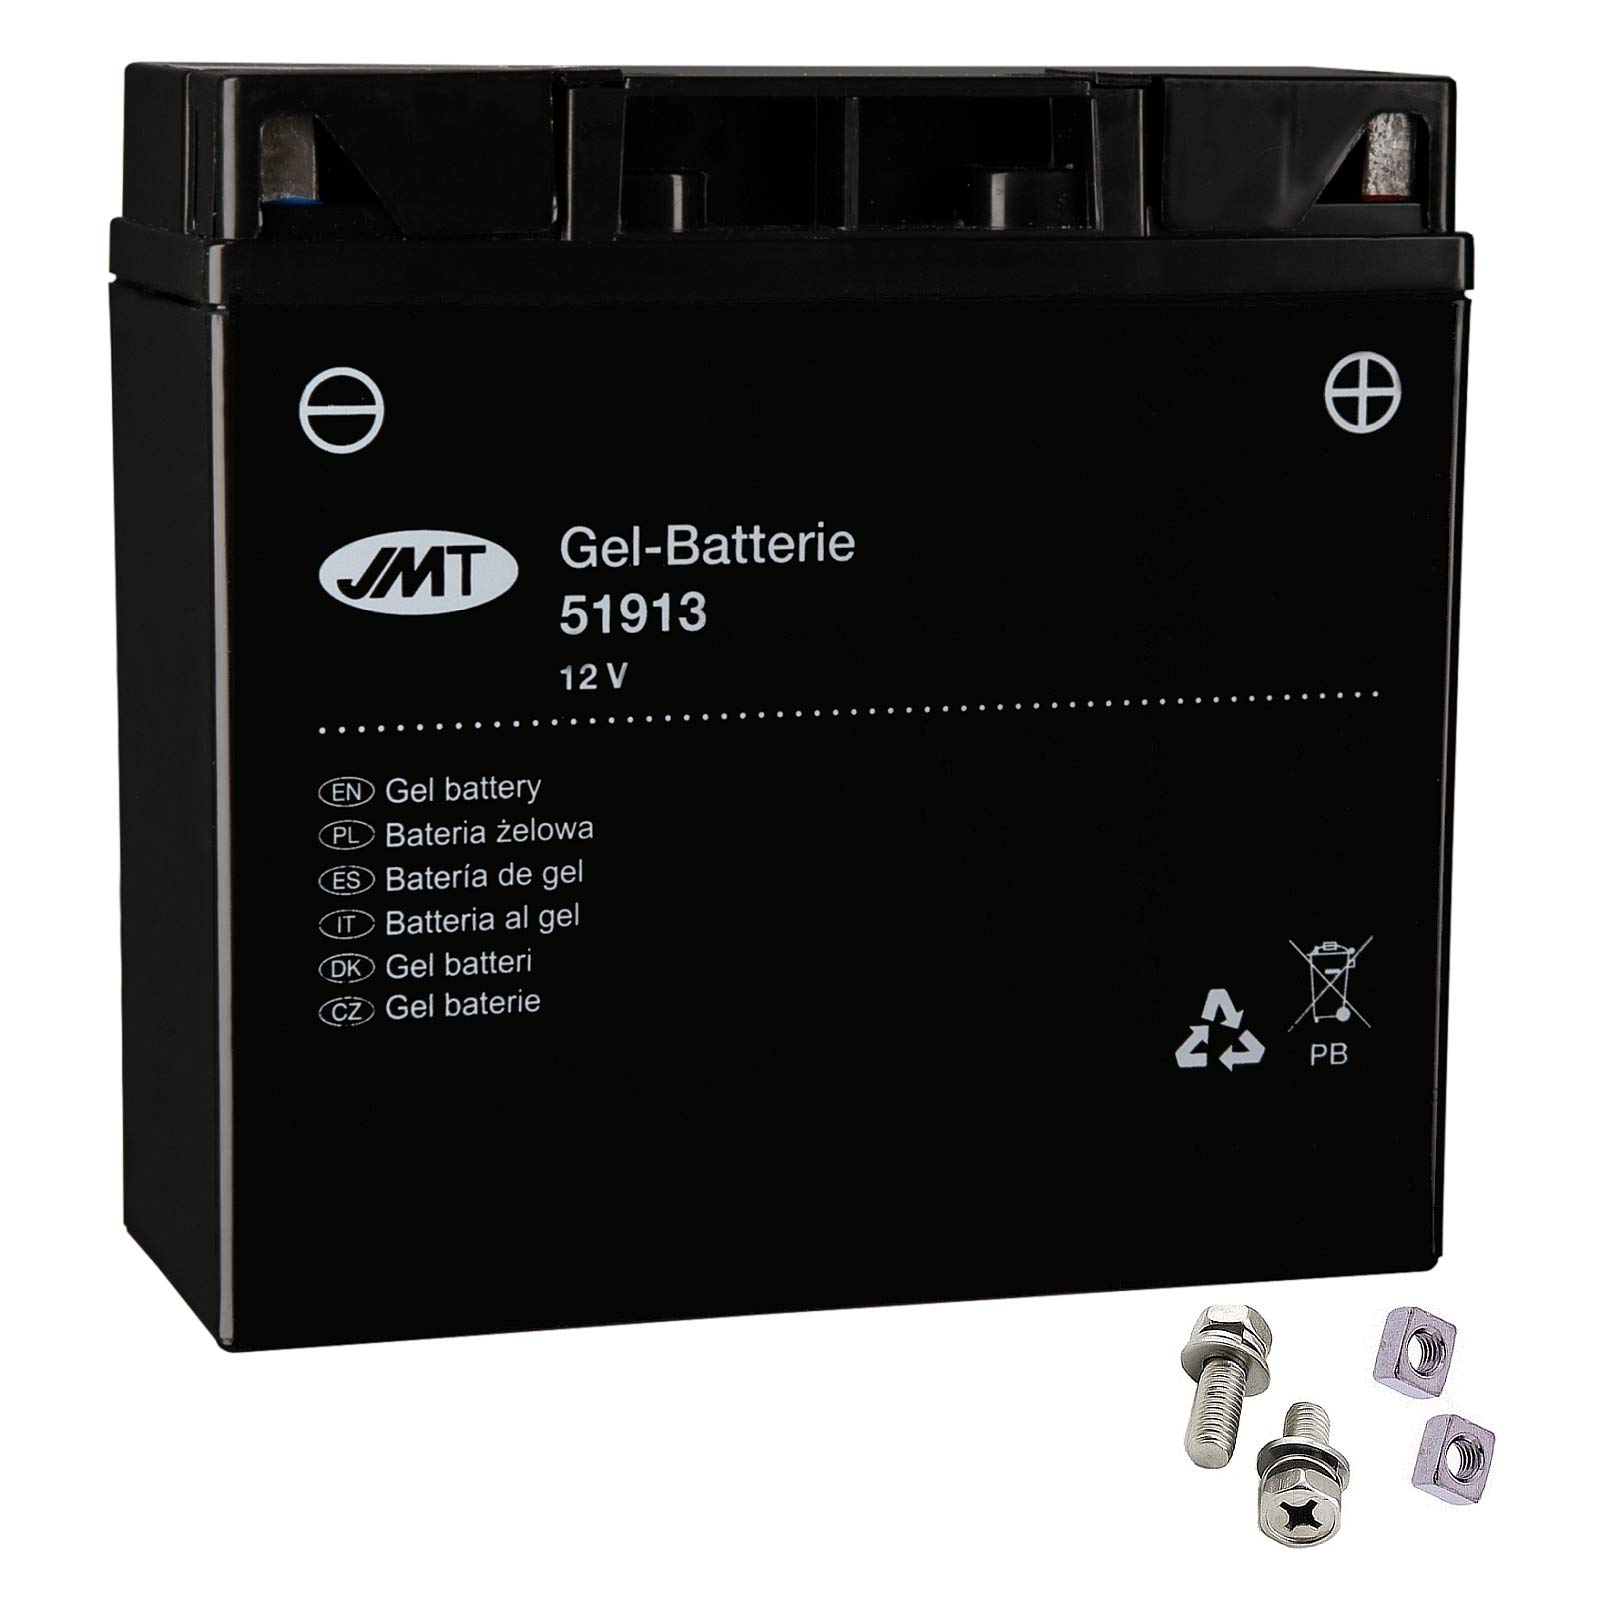 51913 Gel Batterie für K 1200 GT ABS Baujahr 2003-2008 von JMT von Unbekannt